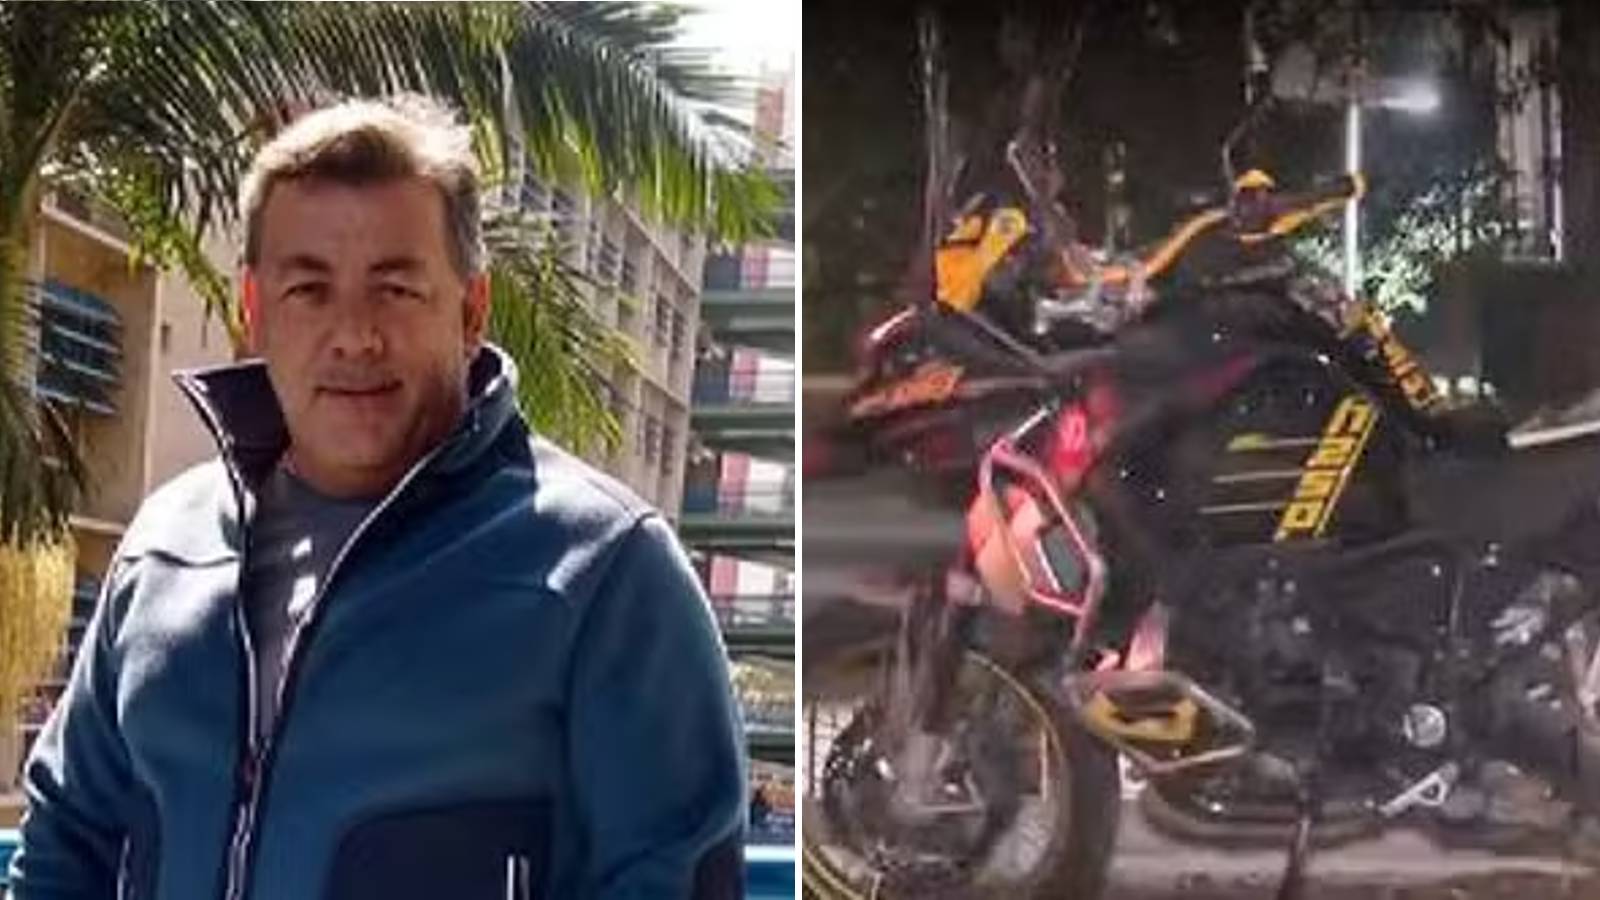 Marcos César Peruchi, de 53 anos, transitava com a motocicleta importada pela avenida quando foi cercado por quatro suspeitos